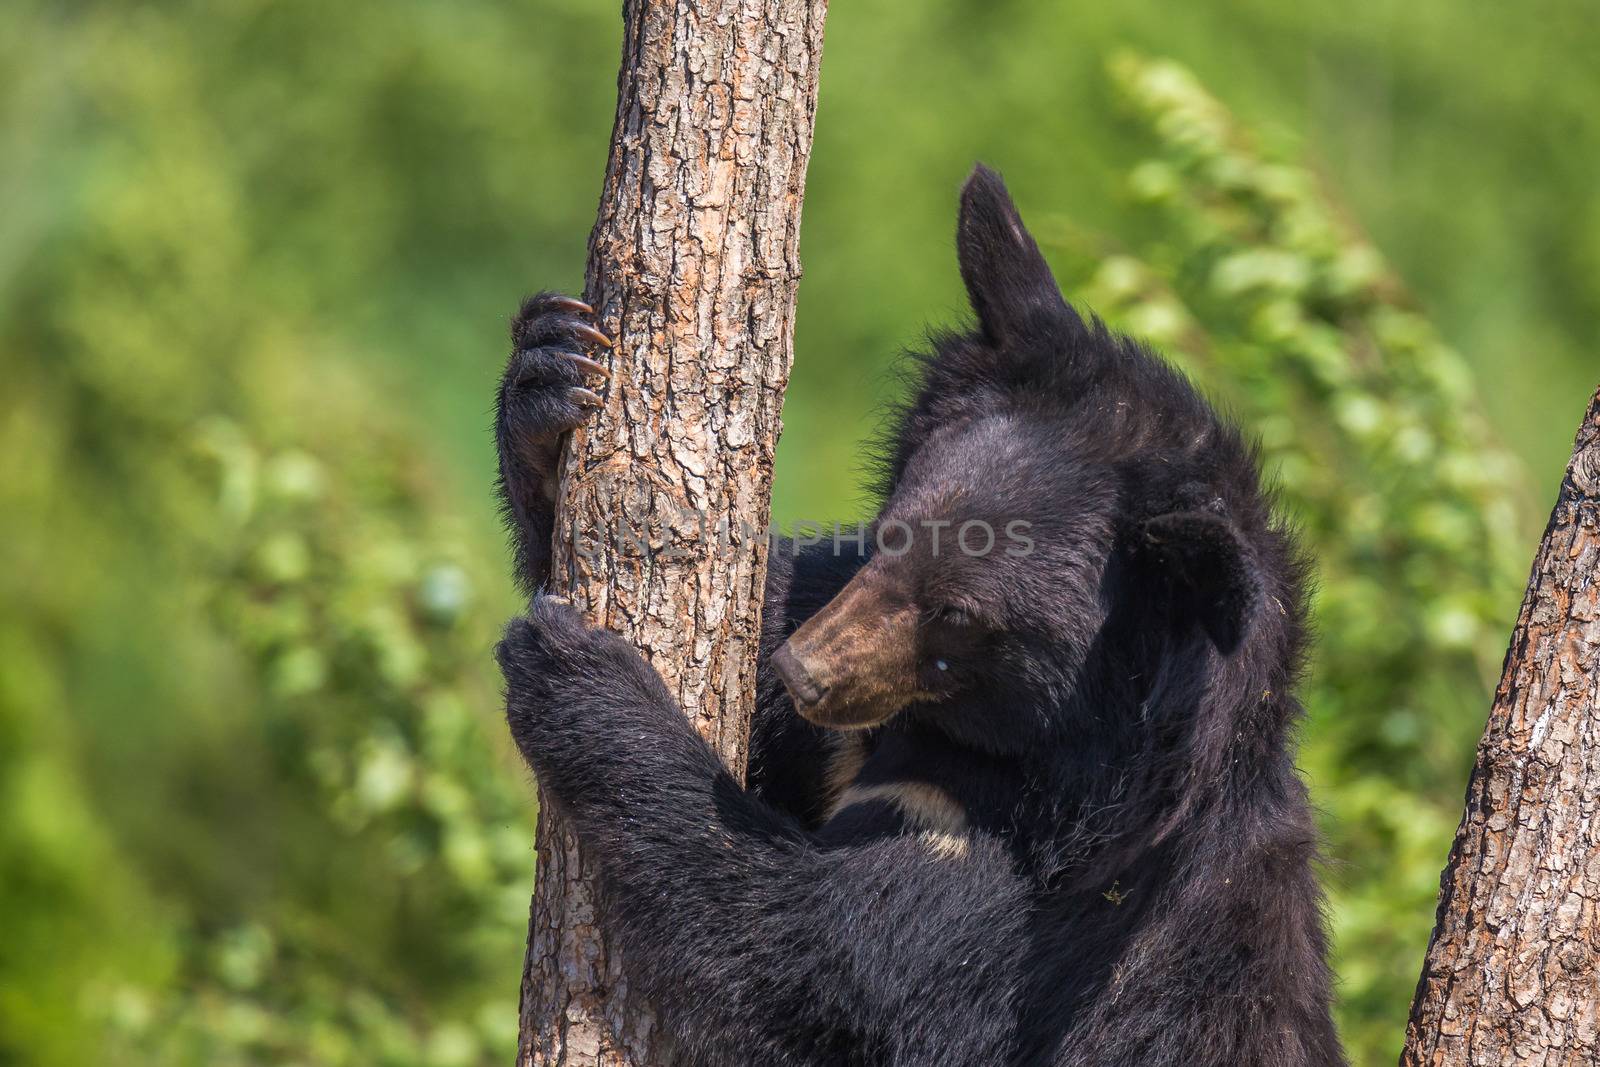 Black Bear climbing a tree on a sunny day by petrsvoboda91